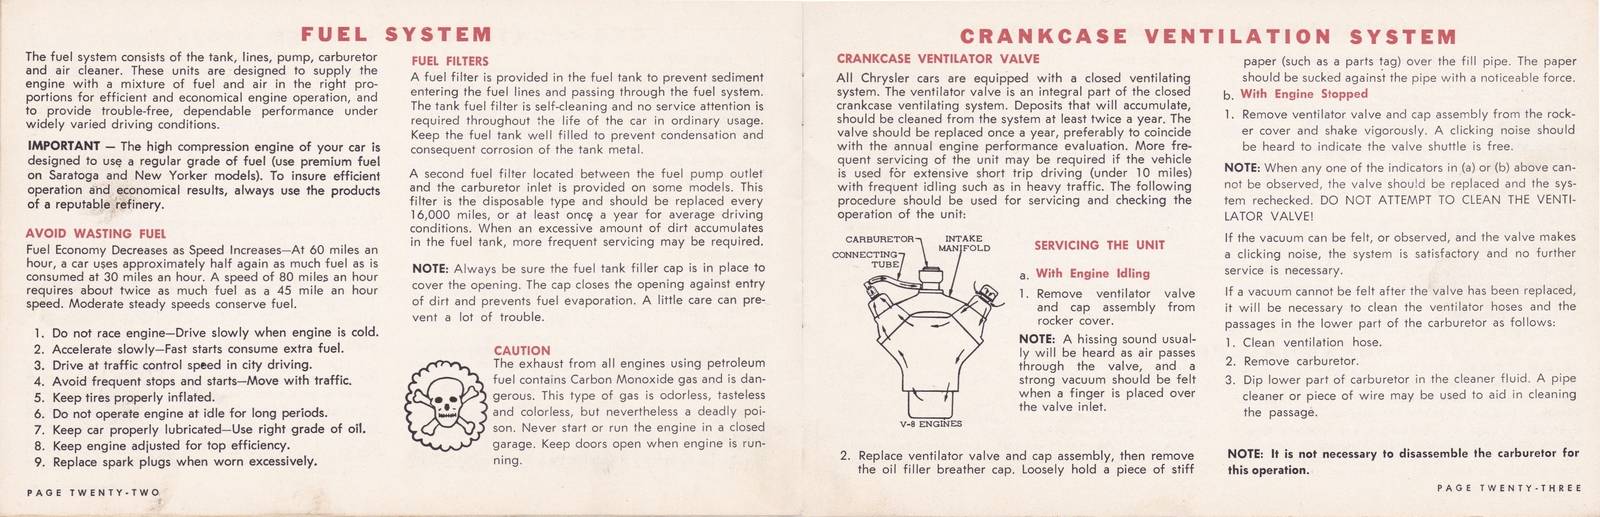 n_1964 Chrysler Owner's Manual (Cdn)-22-23.jpg